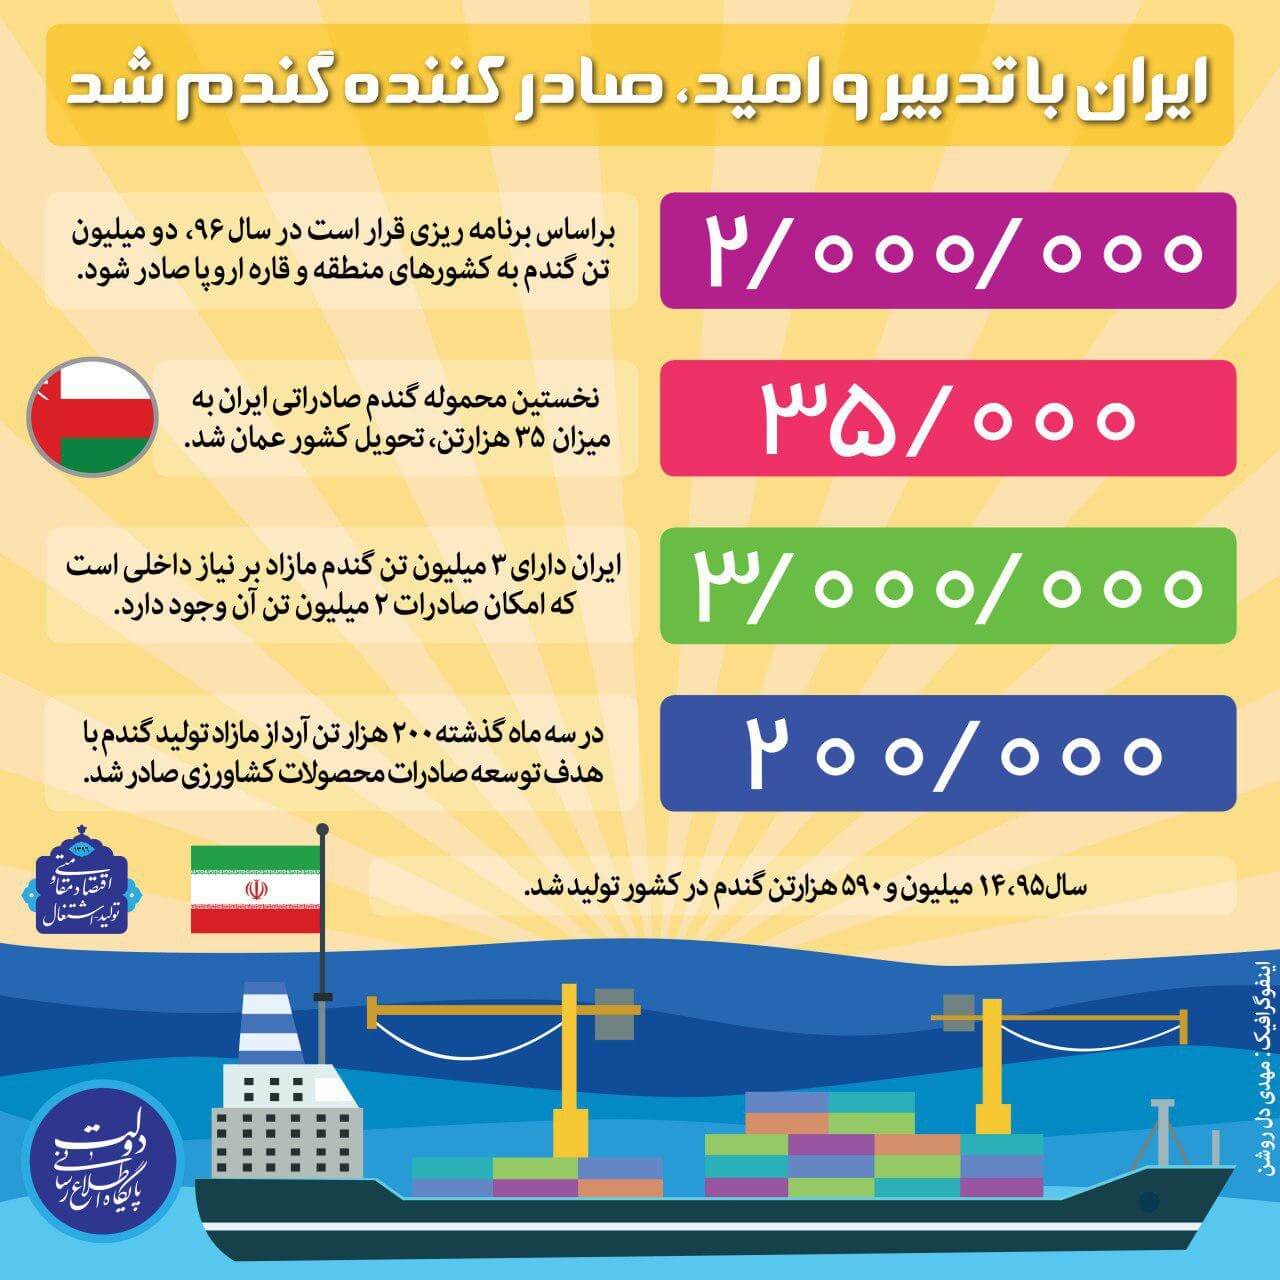 اینفوگراف میزان صادرات گندم ایران